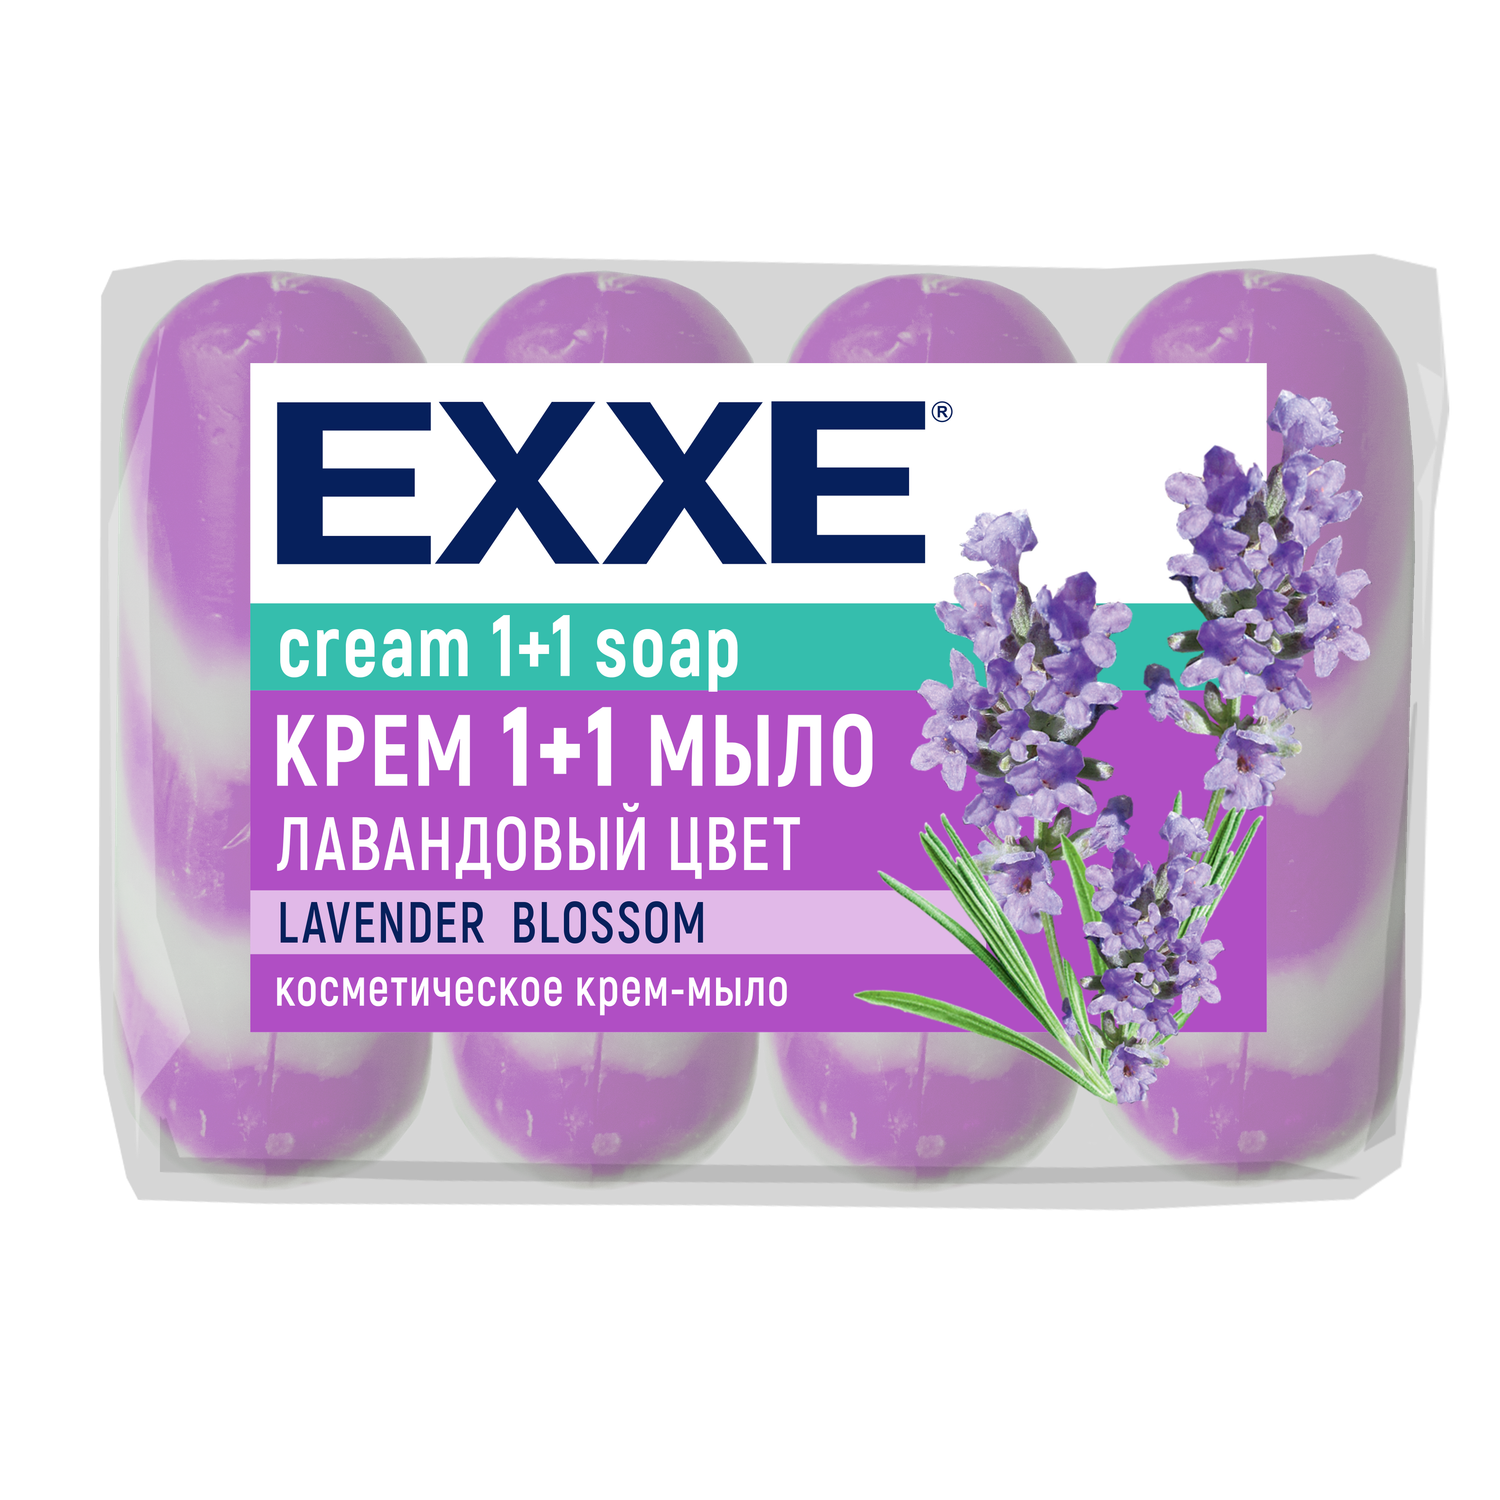 Туалетное крем-мыло EXXE 1+1 Лавандовый цвет 4 шт x 75 г - фото 1